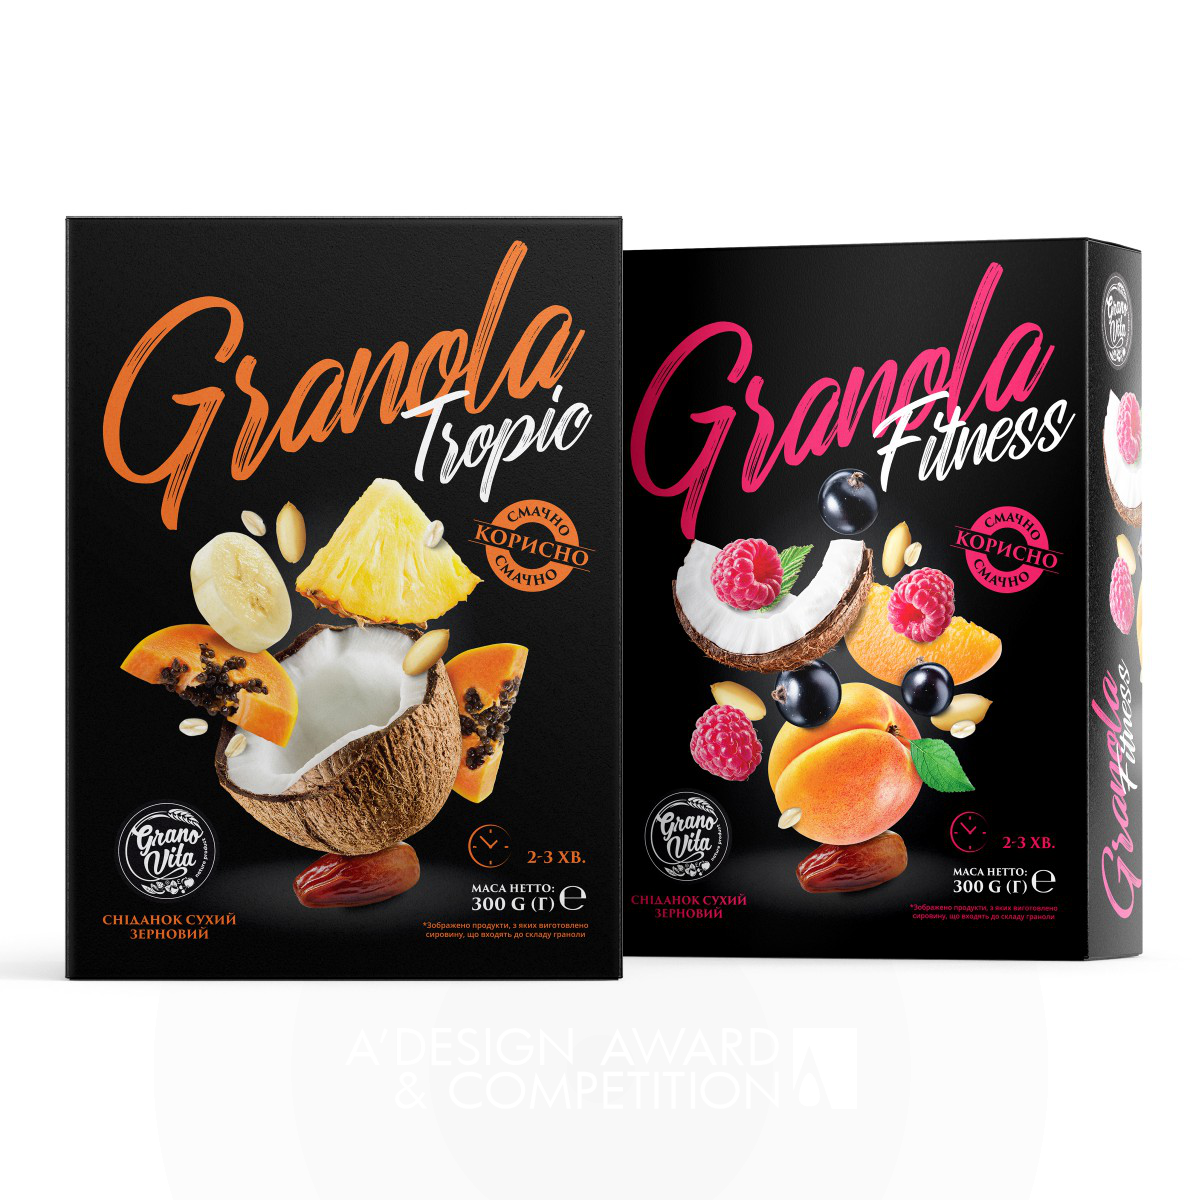 Granovita: Eine gesunde Verpackung für Granola